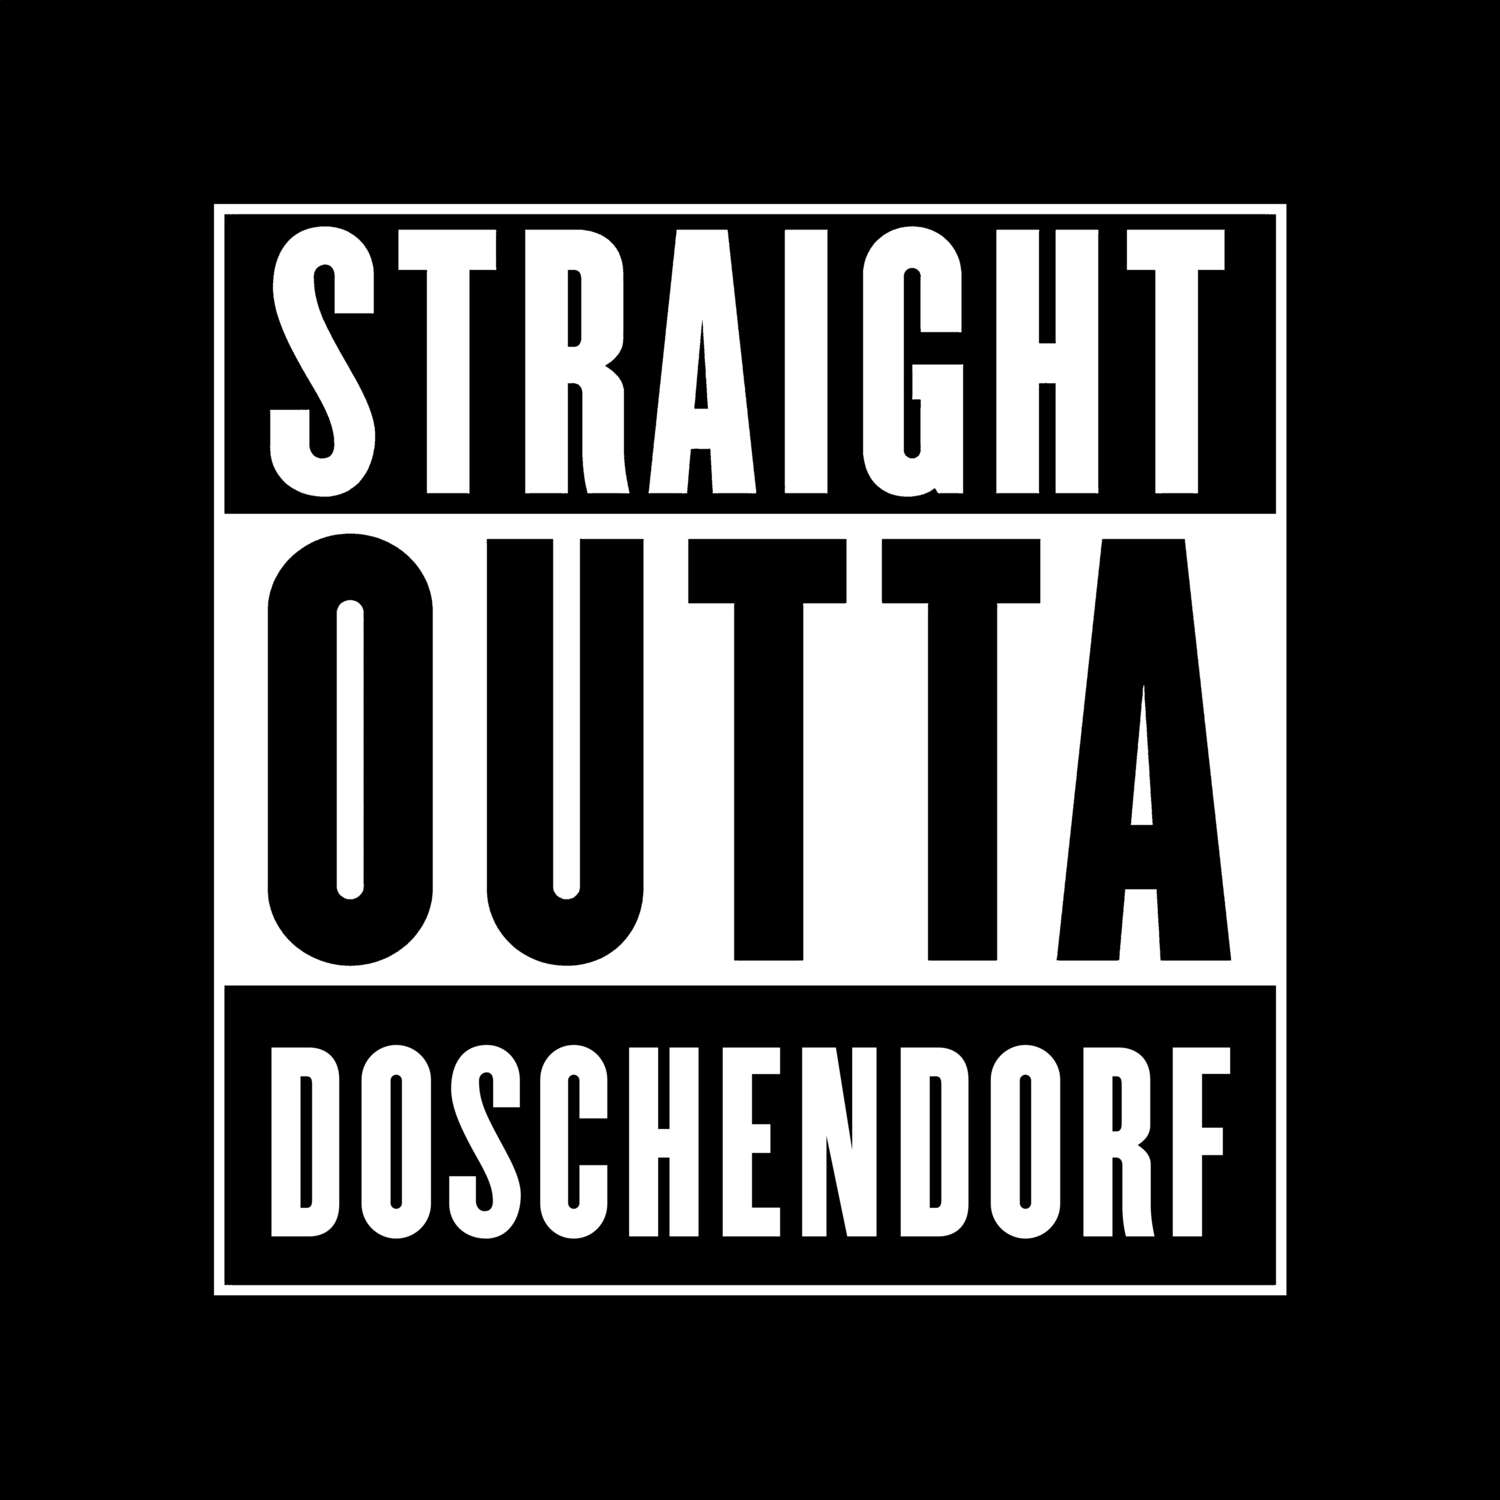 Doschendorf T-Shirt »Straight Outta«